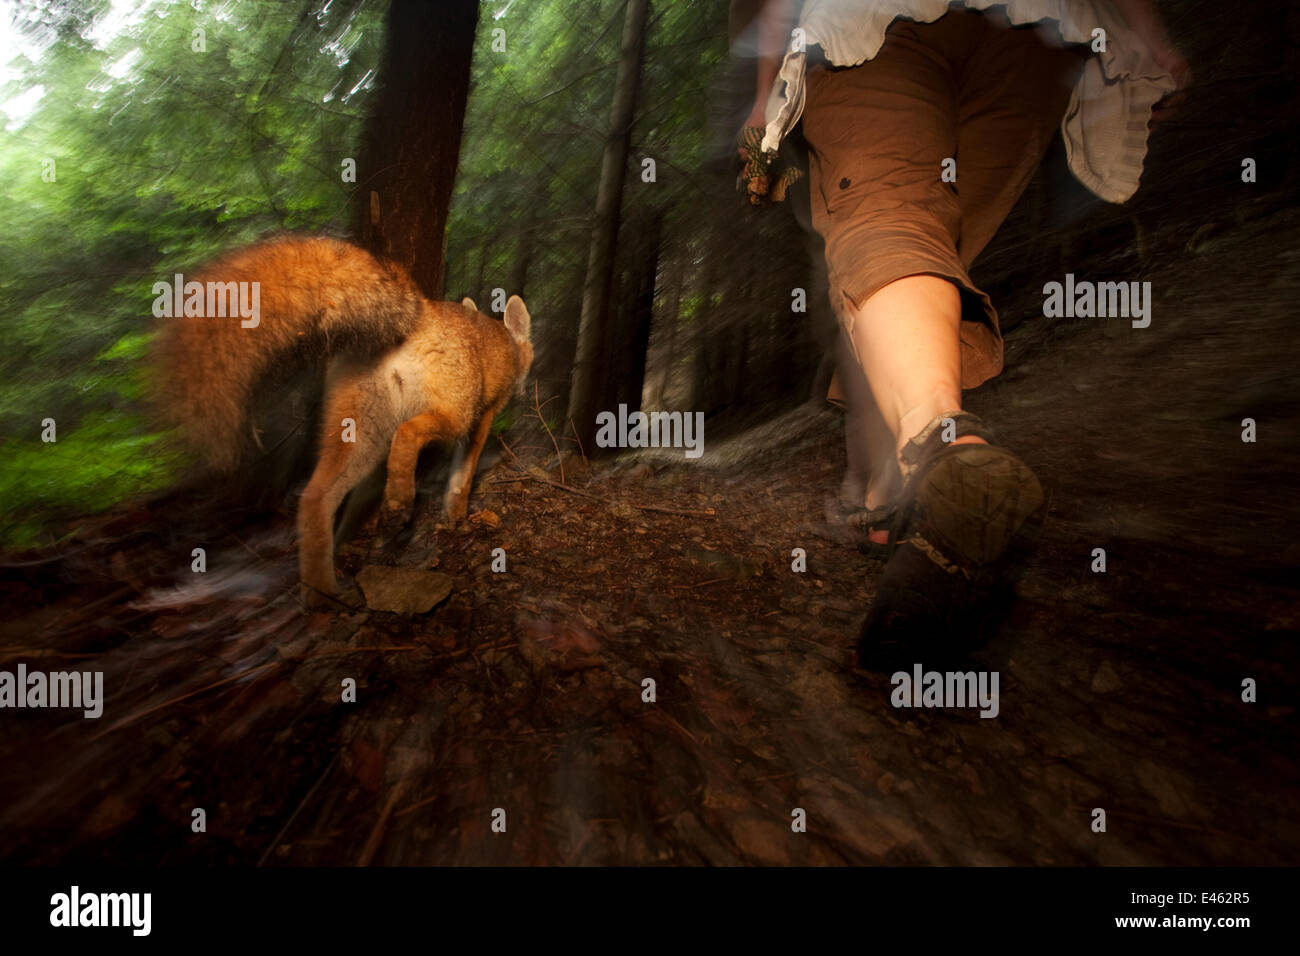 Le renard roux (Vulpes vulpes) vixen 'Sophie' s'habituaient à la le photographe et lui permettrait de marcher à travers la forêt à côté d'elle, Forêt Noire, Allemagne, Juillet. Gagnant du prix Fritz Polking portfolio dans la GDT Concours 2011 Banque D'Images